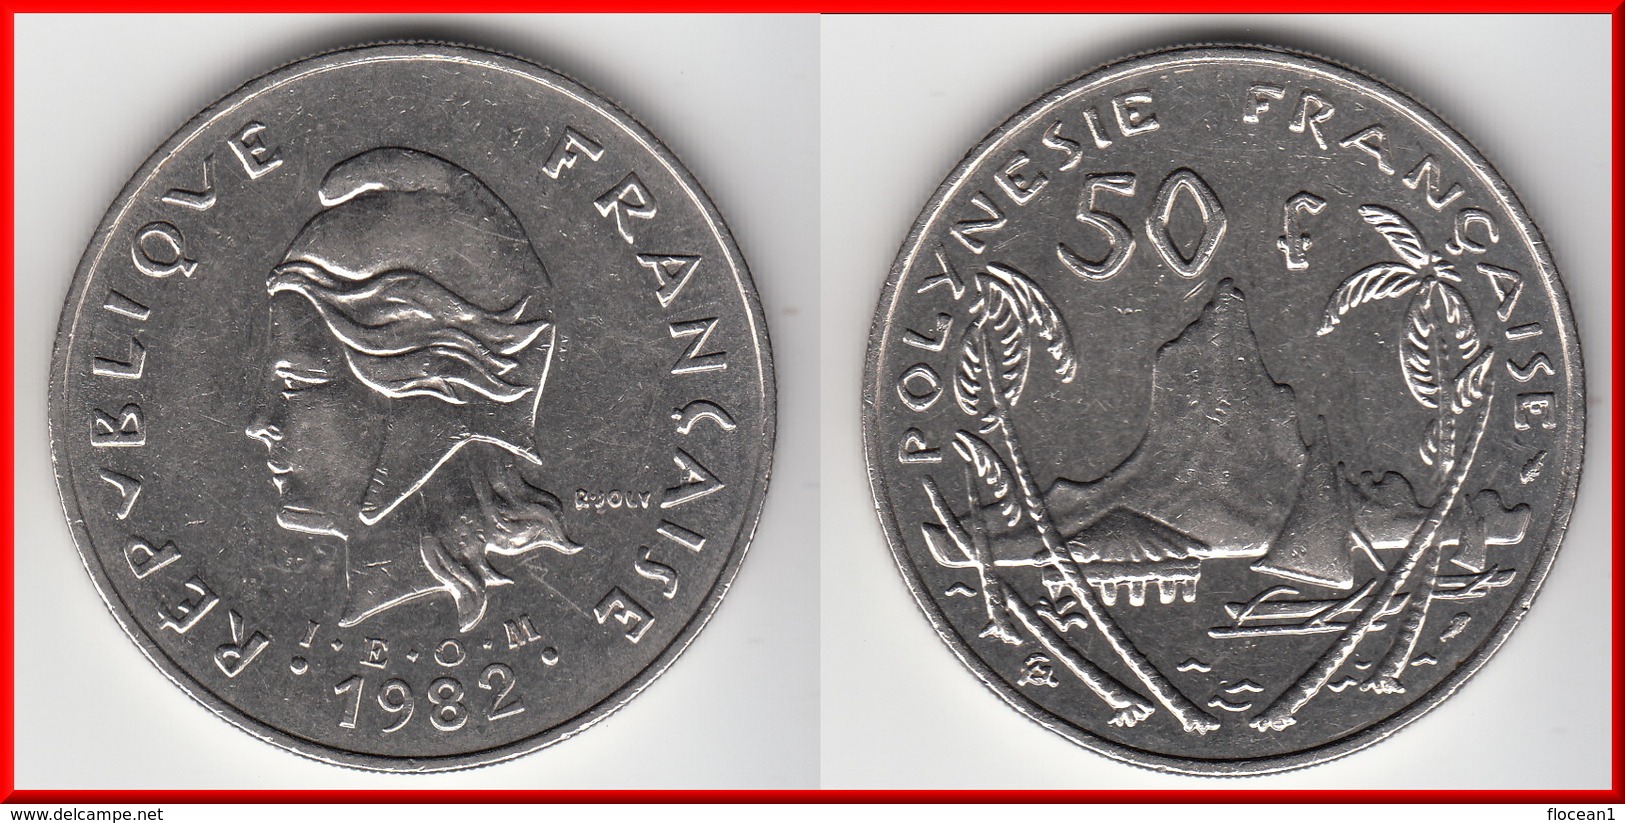 **** POLYNESIE FRANCAISE- FRENCH POLYNESIA - 50 FRANCS 1982 **** EN ACHAT IMMEDIAT !!! - French Polynesia